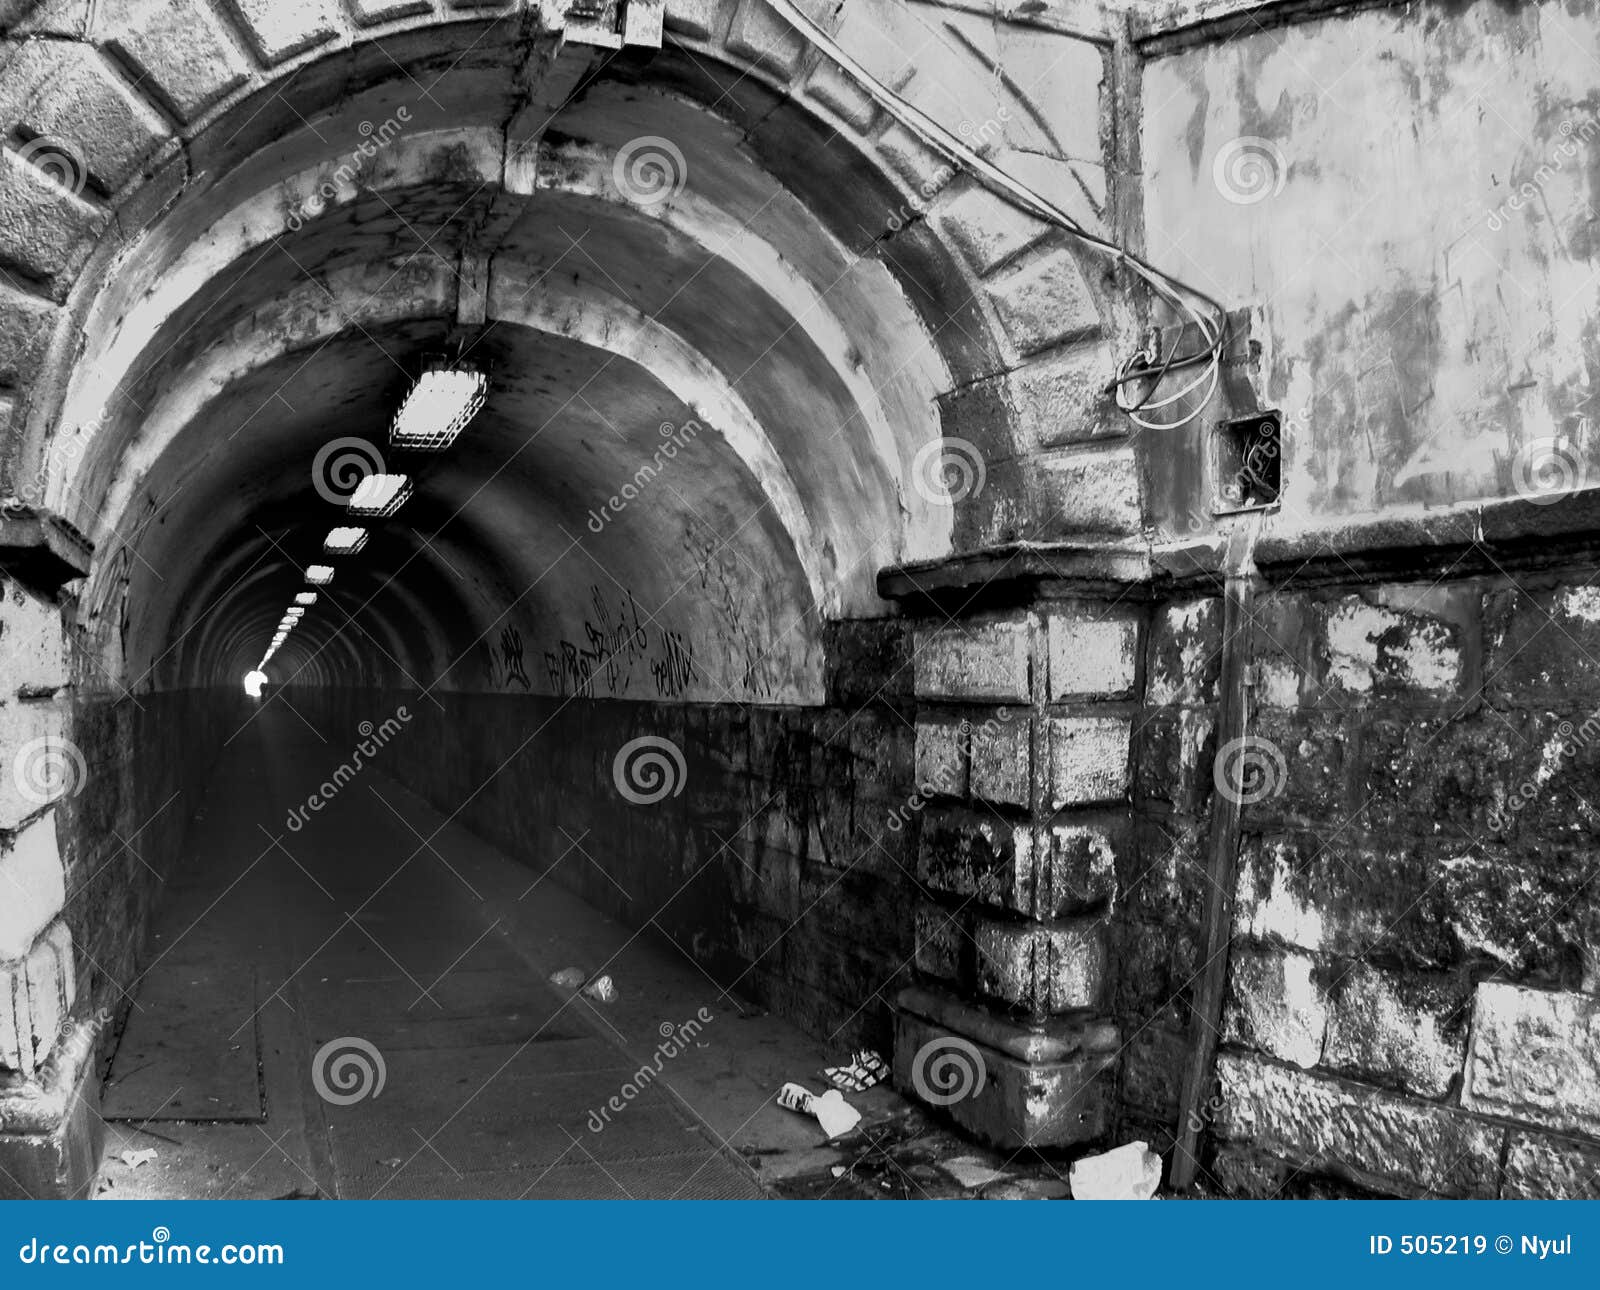 narrow tunel